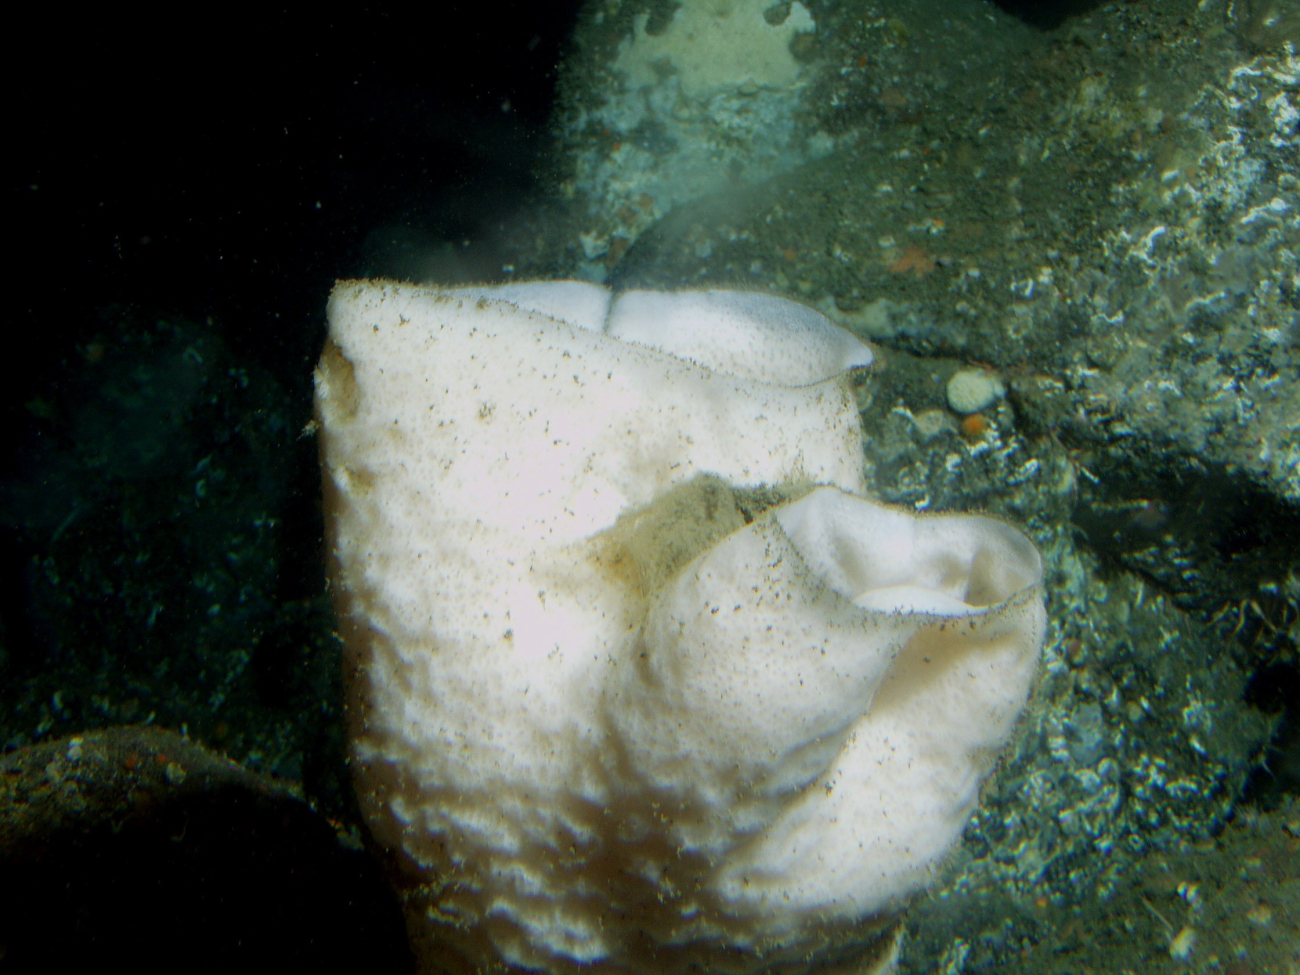 White sponge